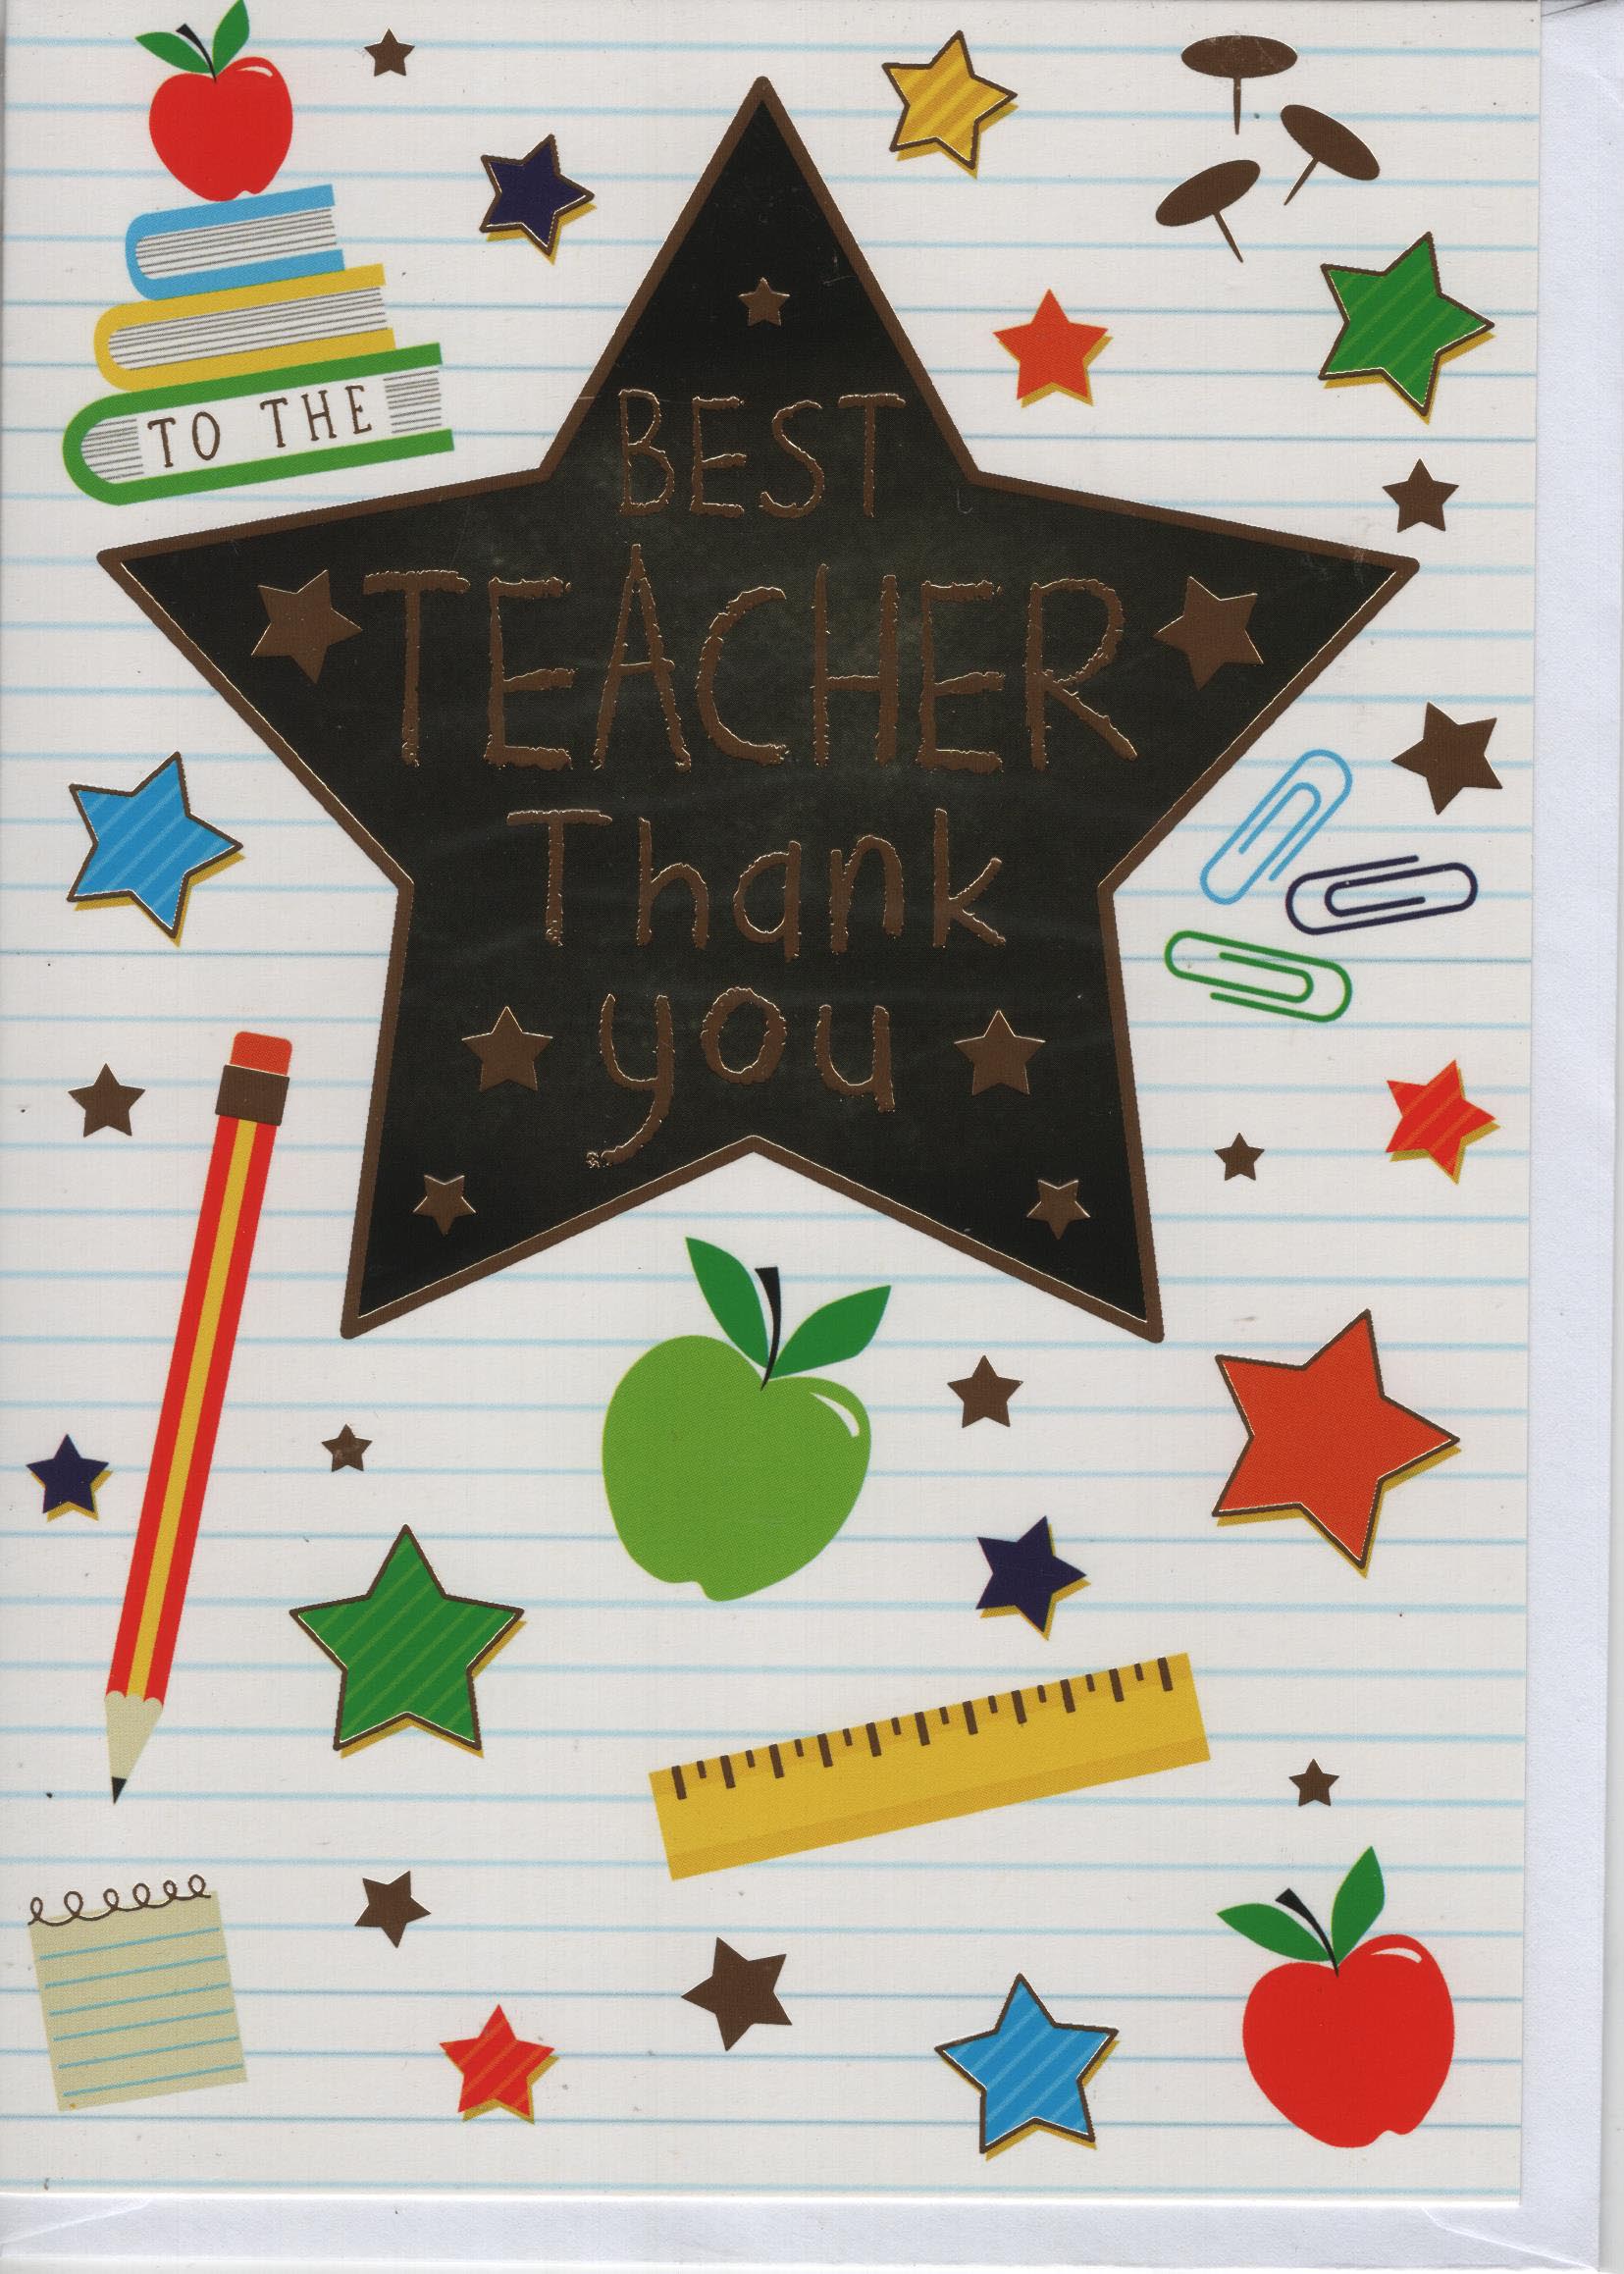 Best Teacher Thank You